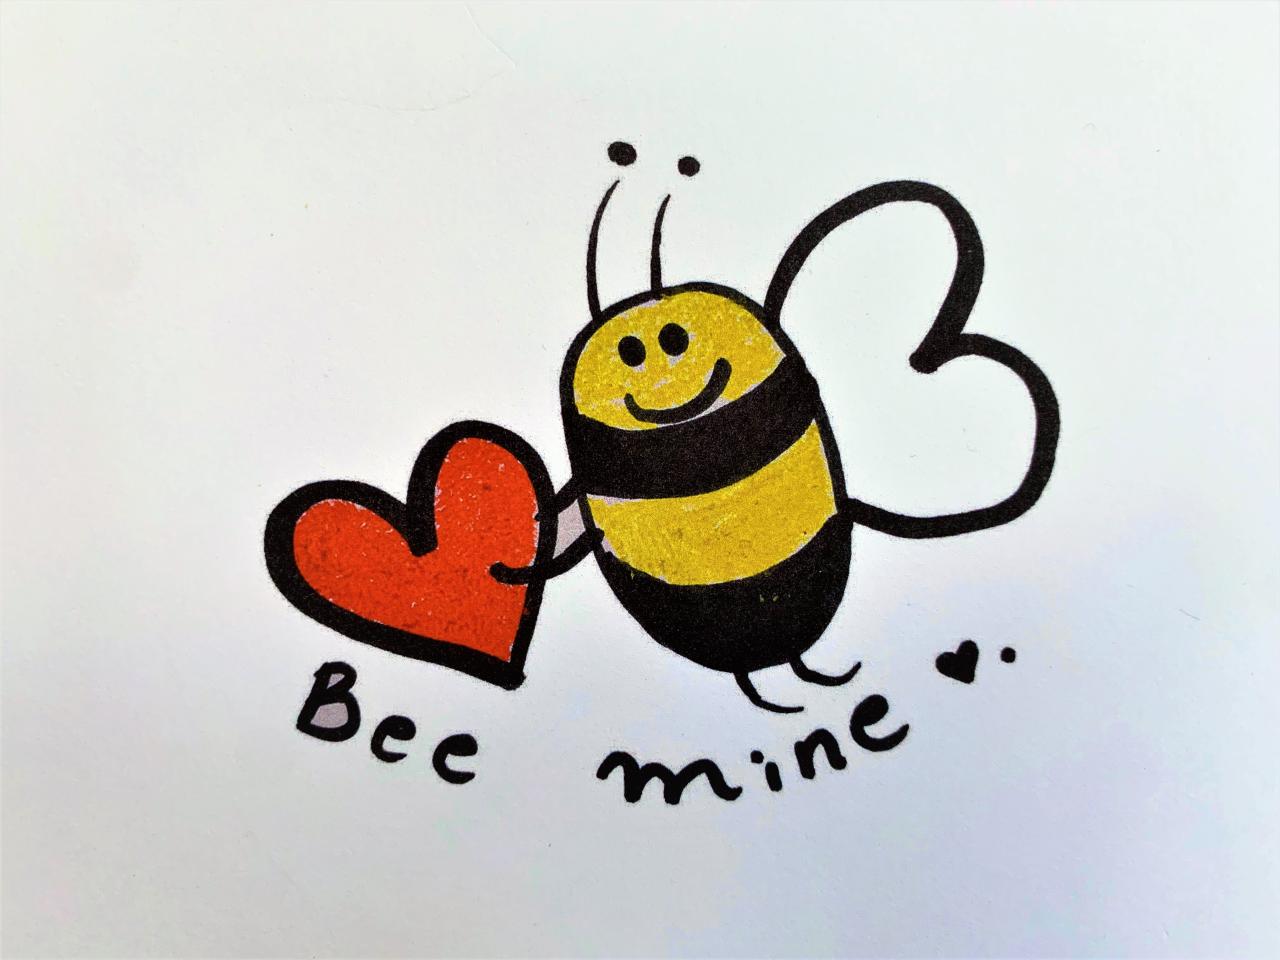 Bee Mine artwork